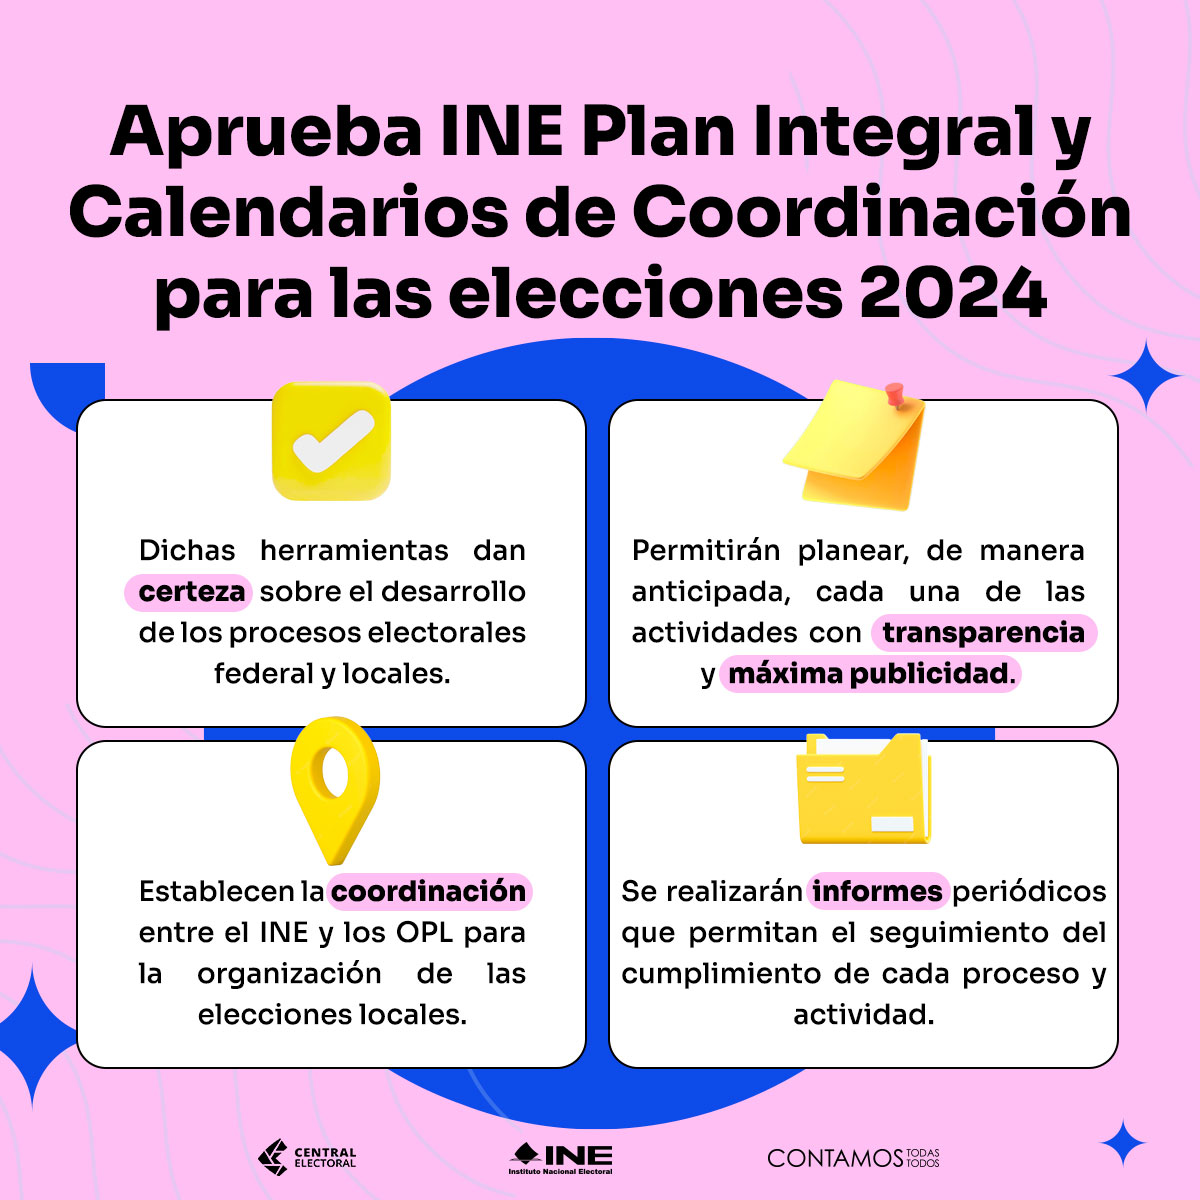 El Plan Integral y Calendarios de Coordinación son herramientas que dan